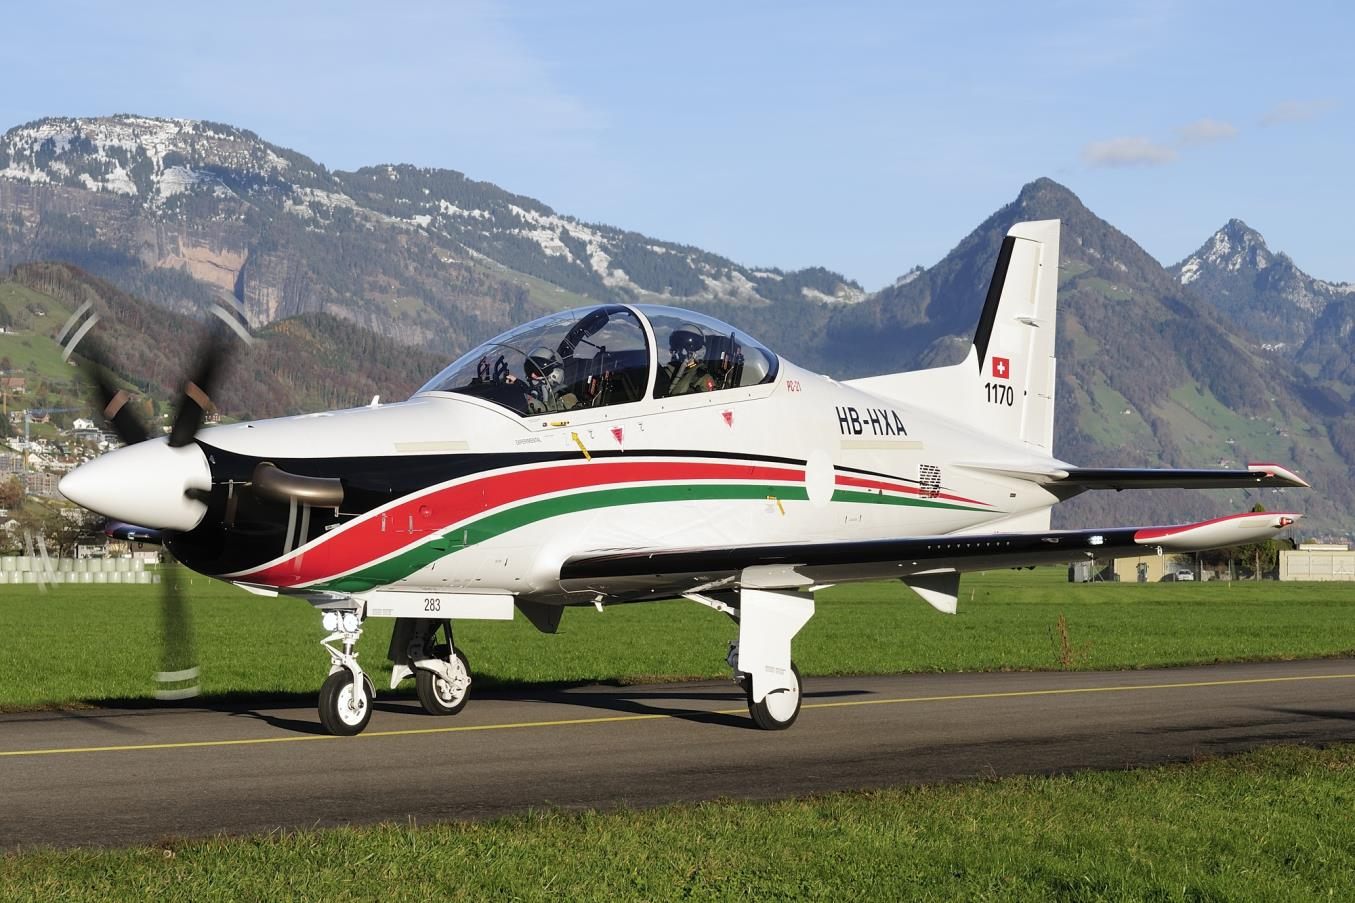 Seite1 Dezember 2016 Jahrgang Nr. 29 Ausgabe Nr. 180 Eine Schweizer Erfolgsgeschichte: Pilatus PC-21 nun auch für Jordanien (Bild), - und für Frankreich im Gespräch.